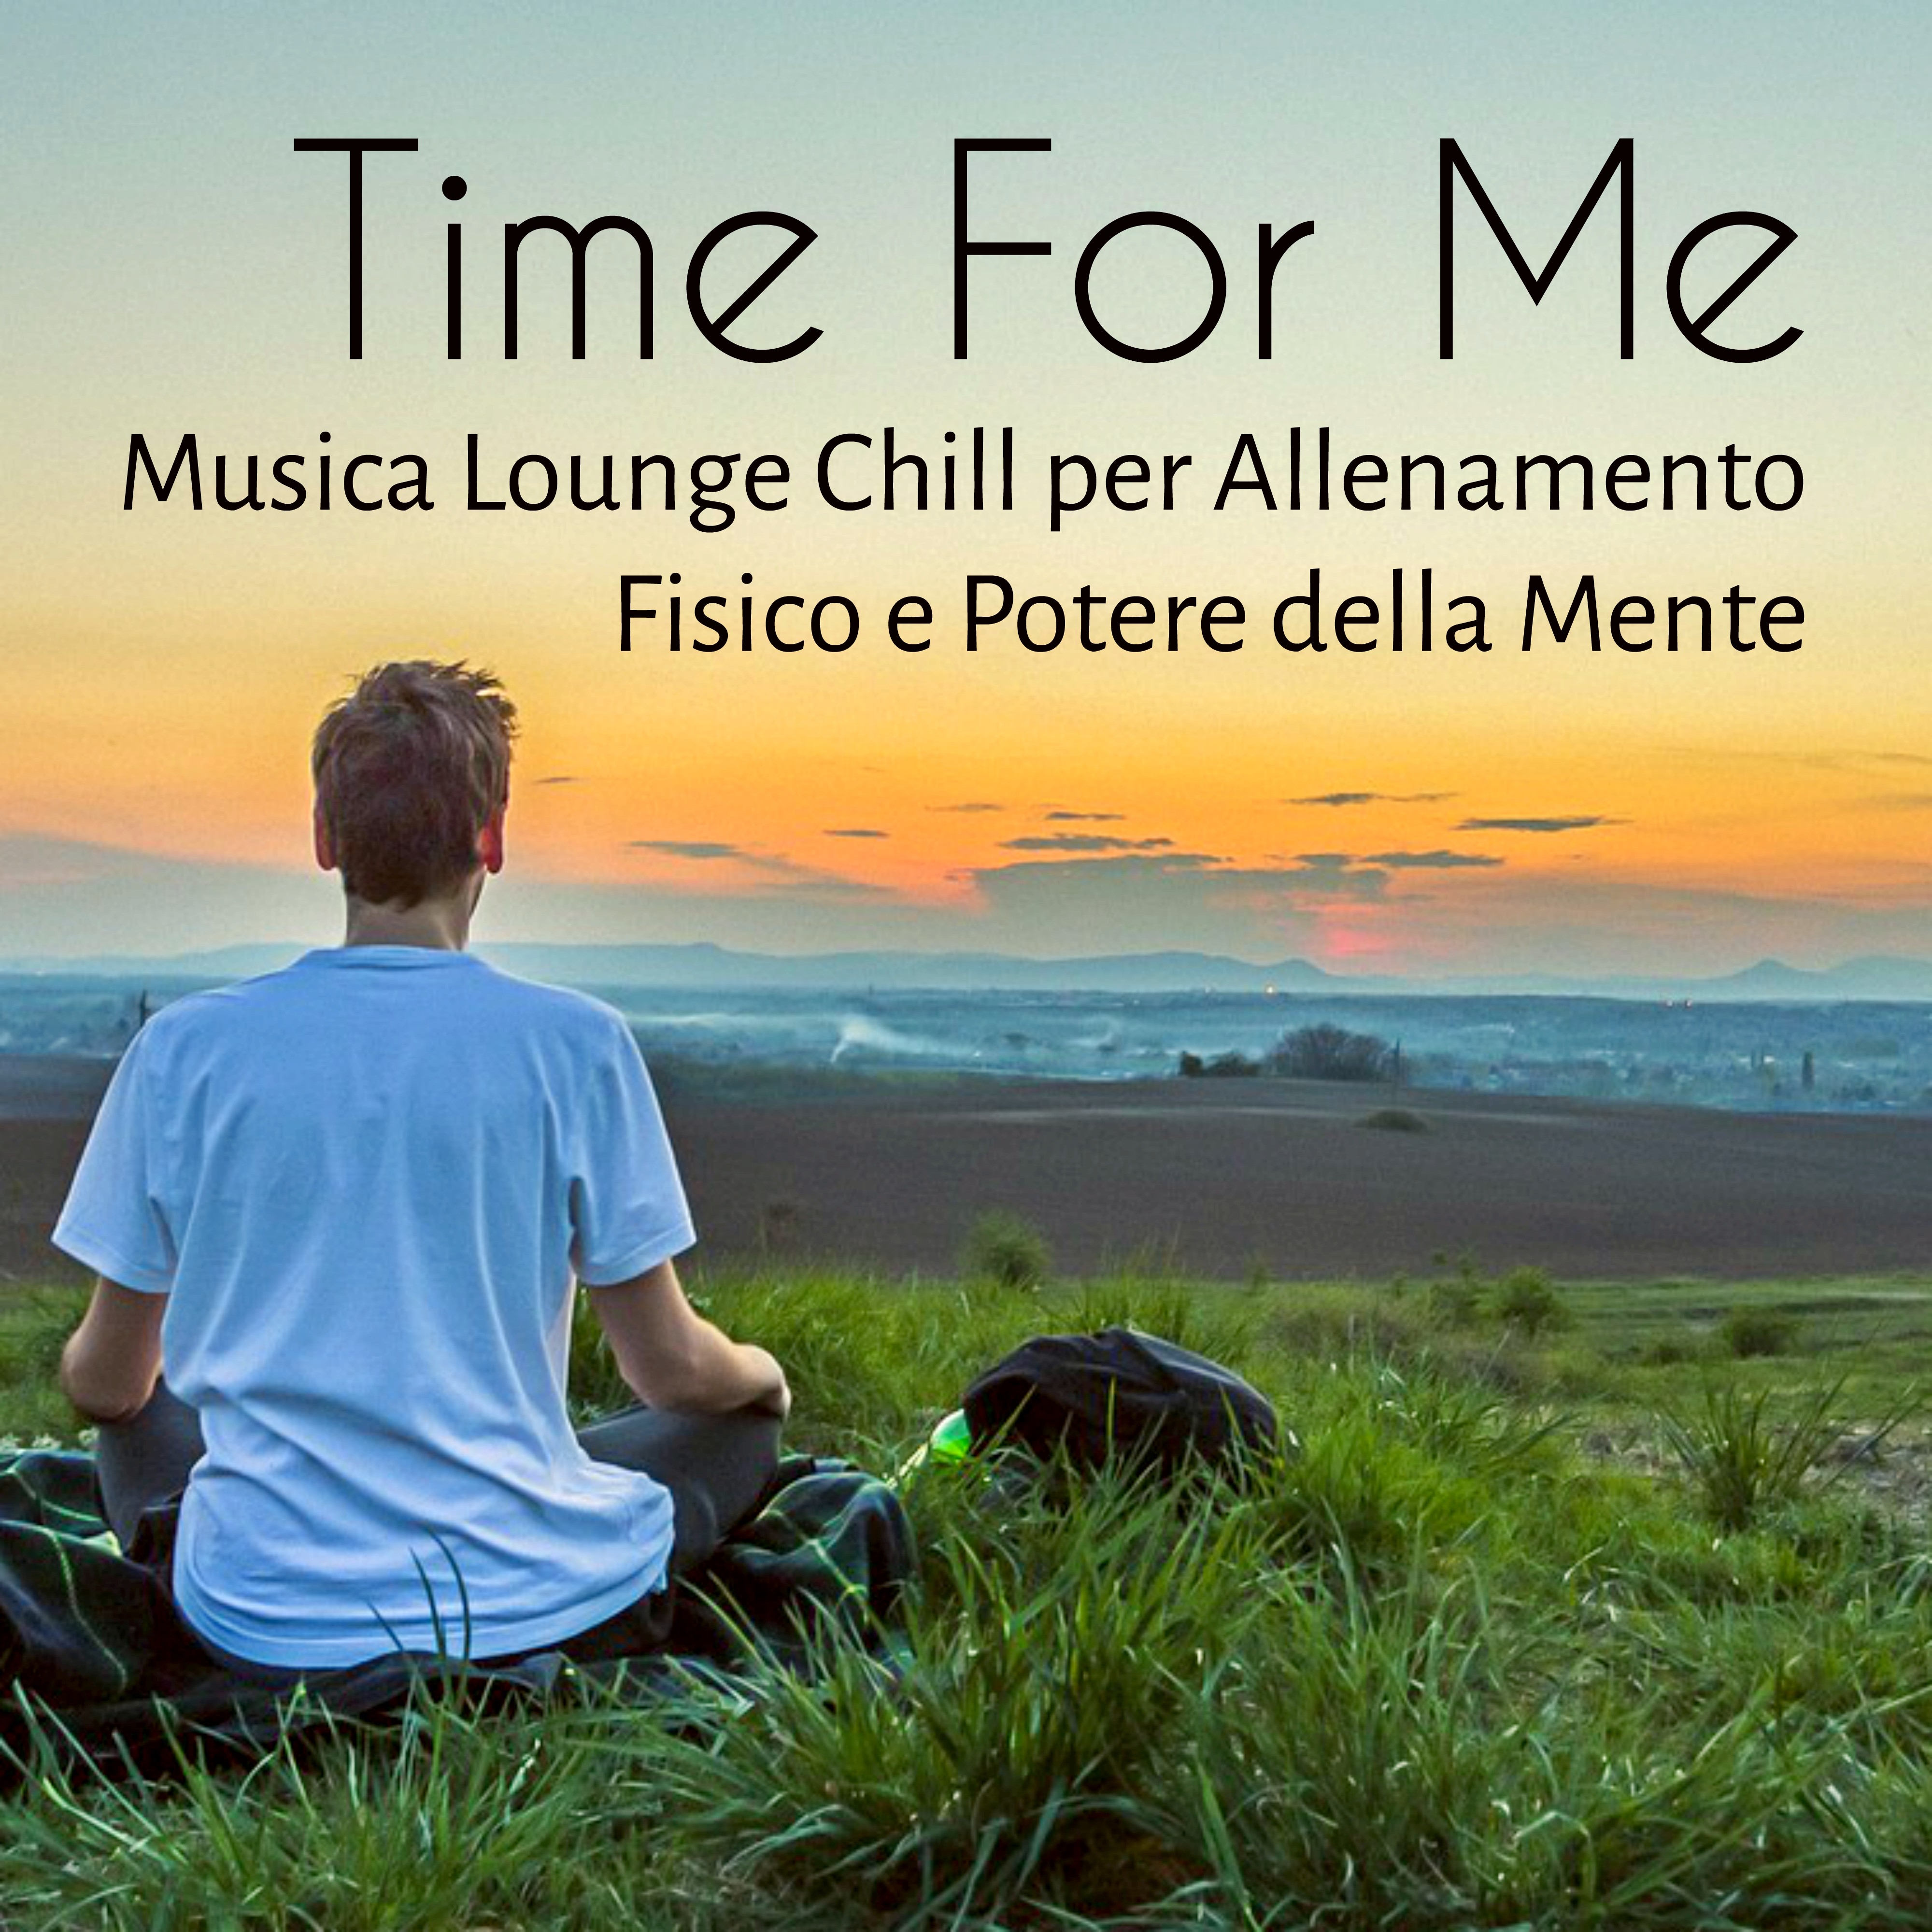 Time For Me - Musica Lounge Chillout Sensuale Stimolante per Allenamento Fisico e Potere della Mente